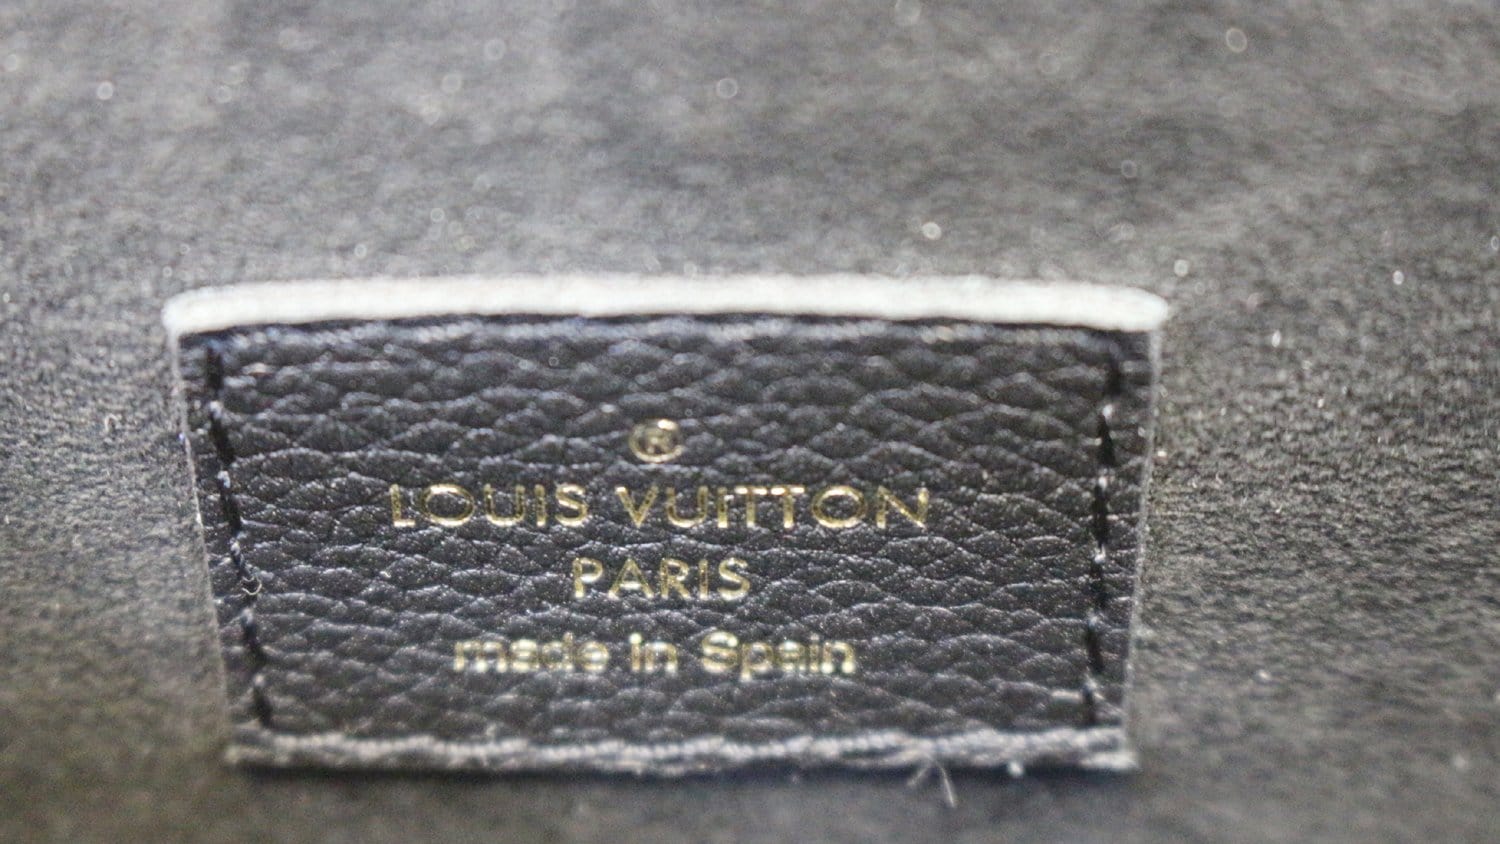 Louis Vuitton Monogram Victoire PM - Brown Shoulder Bags, Handbags -  LOU745316